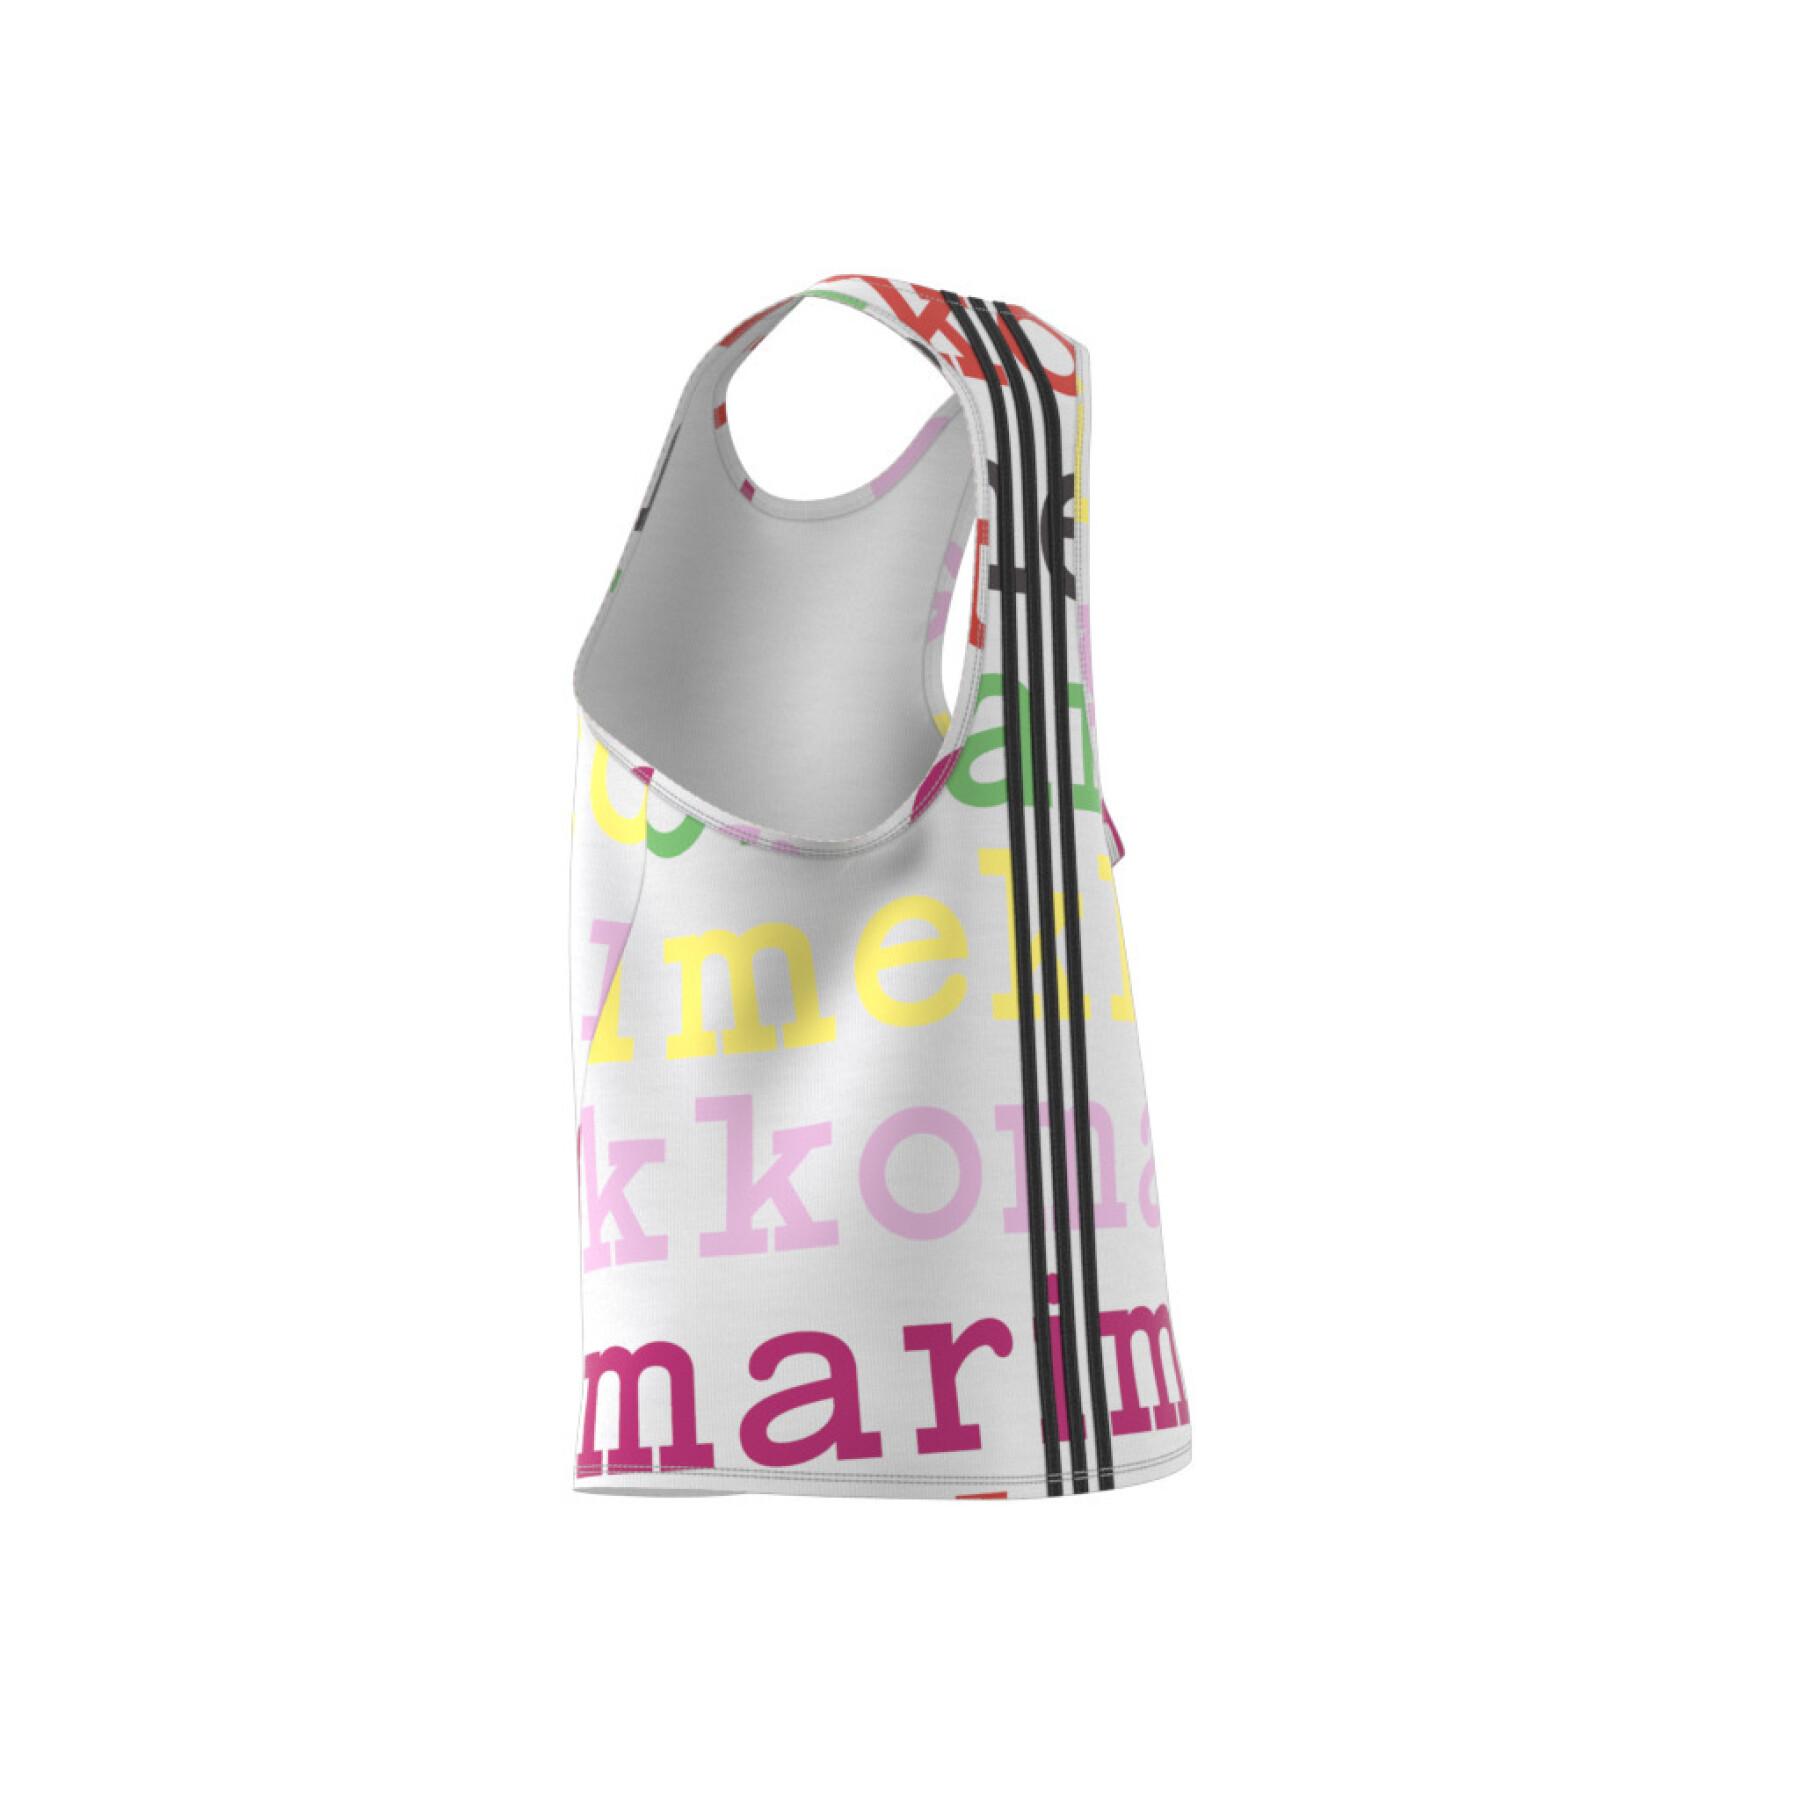 Camiseta de tirantes para mujer adidas x Marimekko